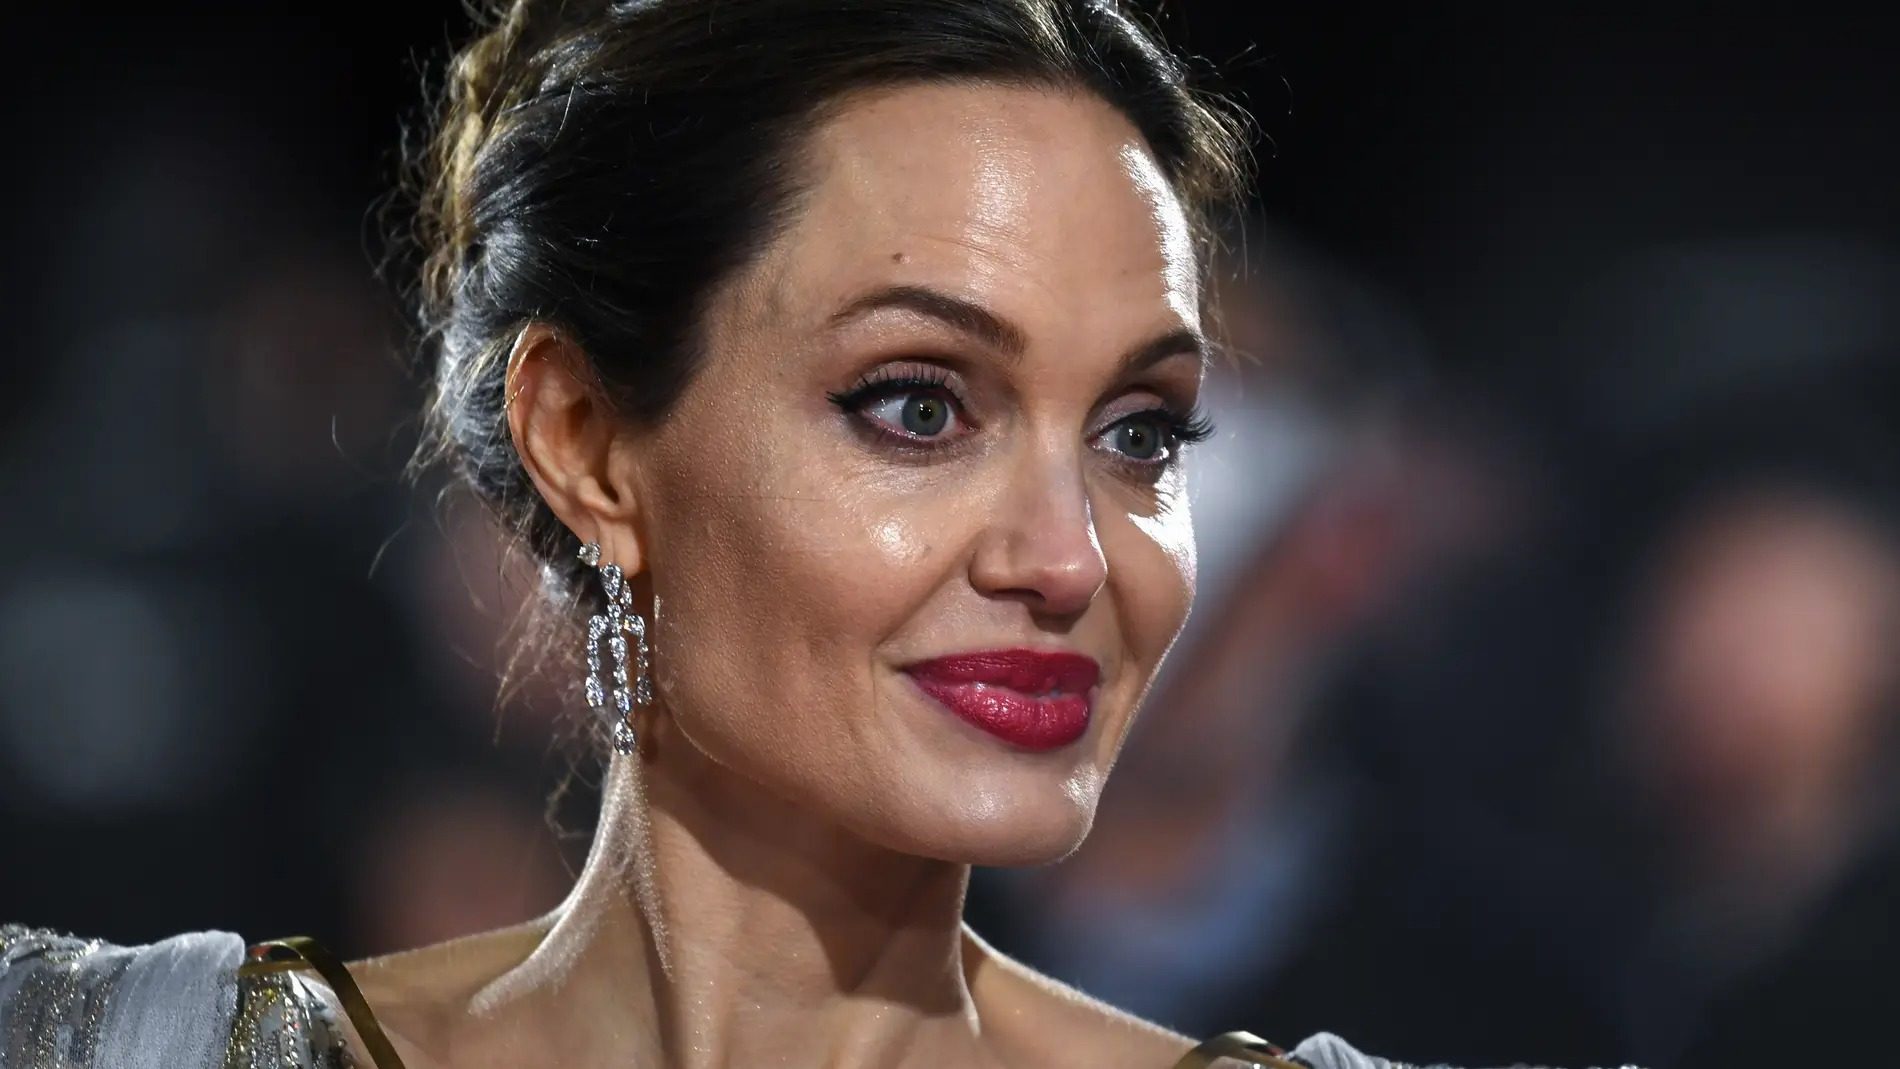 Angelina Jolie ja planeja la seva jubilació, serà aviat i és per salut